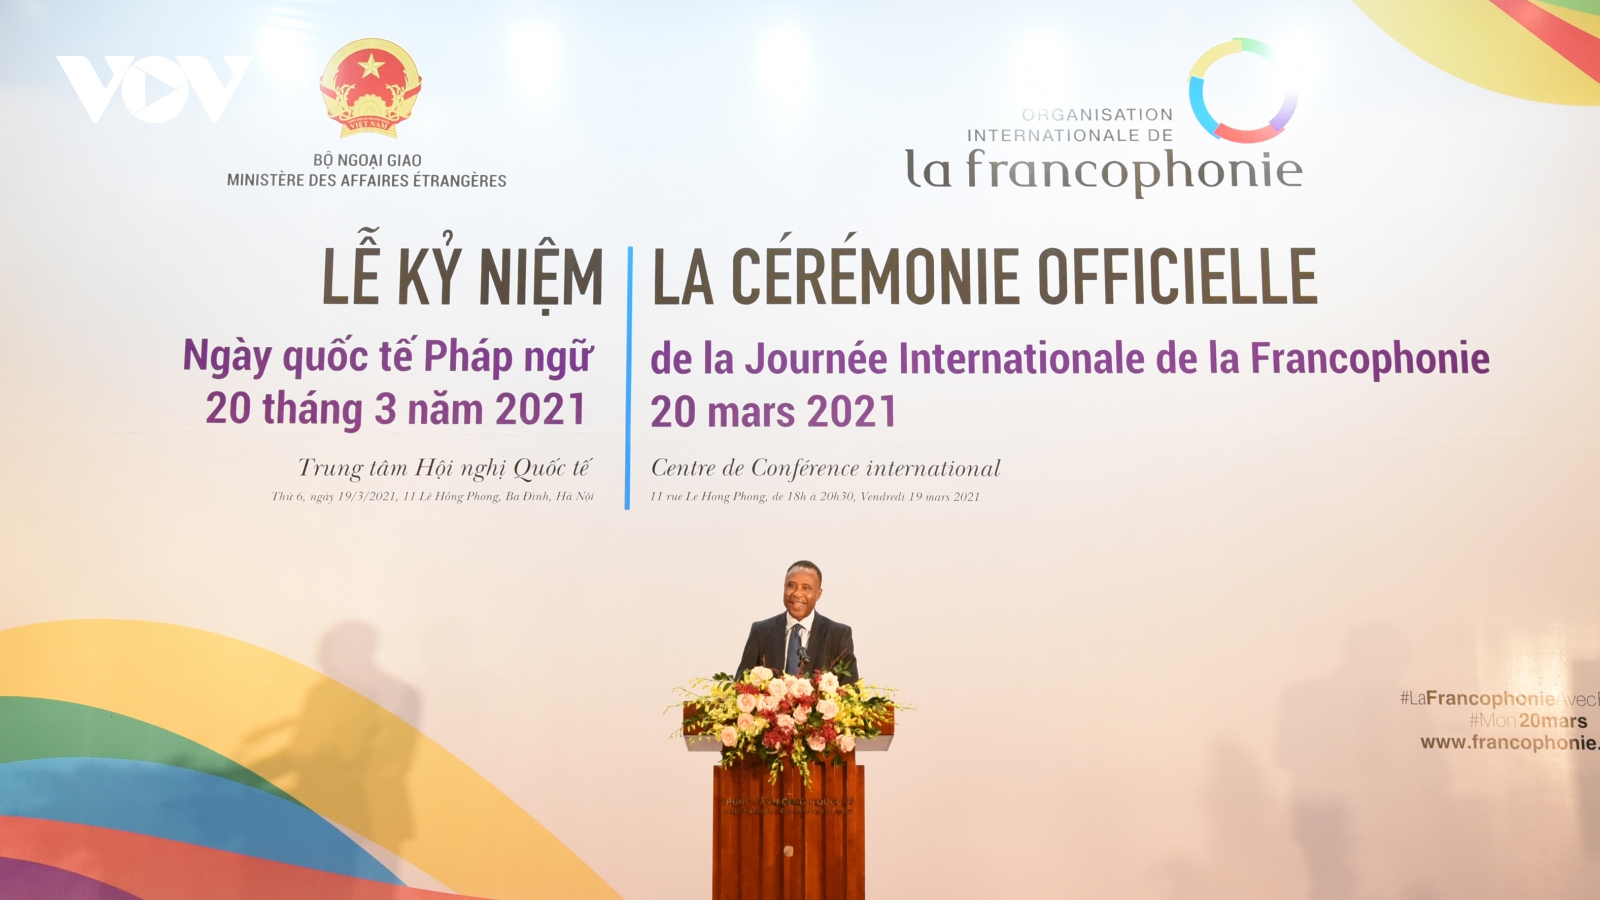 Kỷ niệm Ngày Quốc tế Pháp ngữ 2021: Đoàn kết và phát huy giá trị nhân văn trong đại dịch